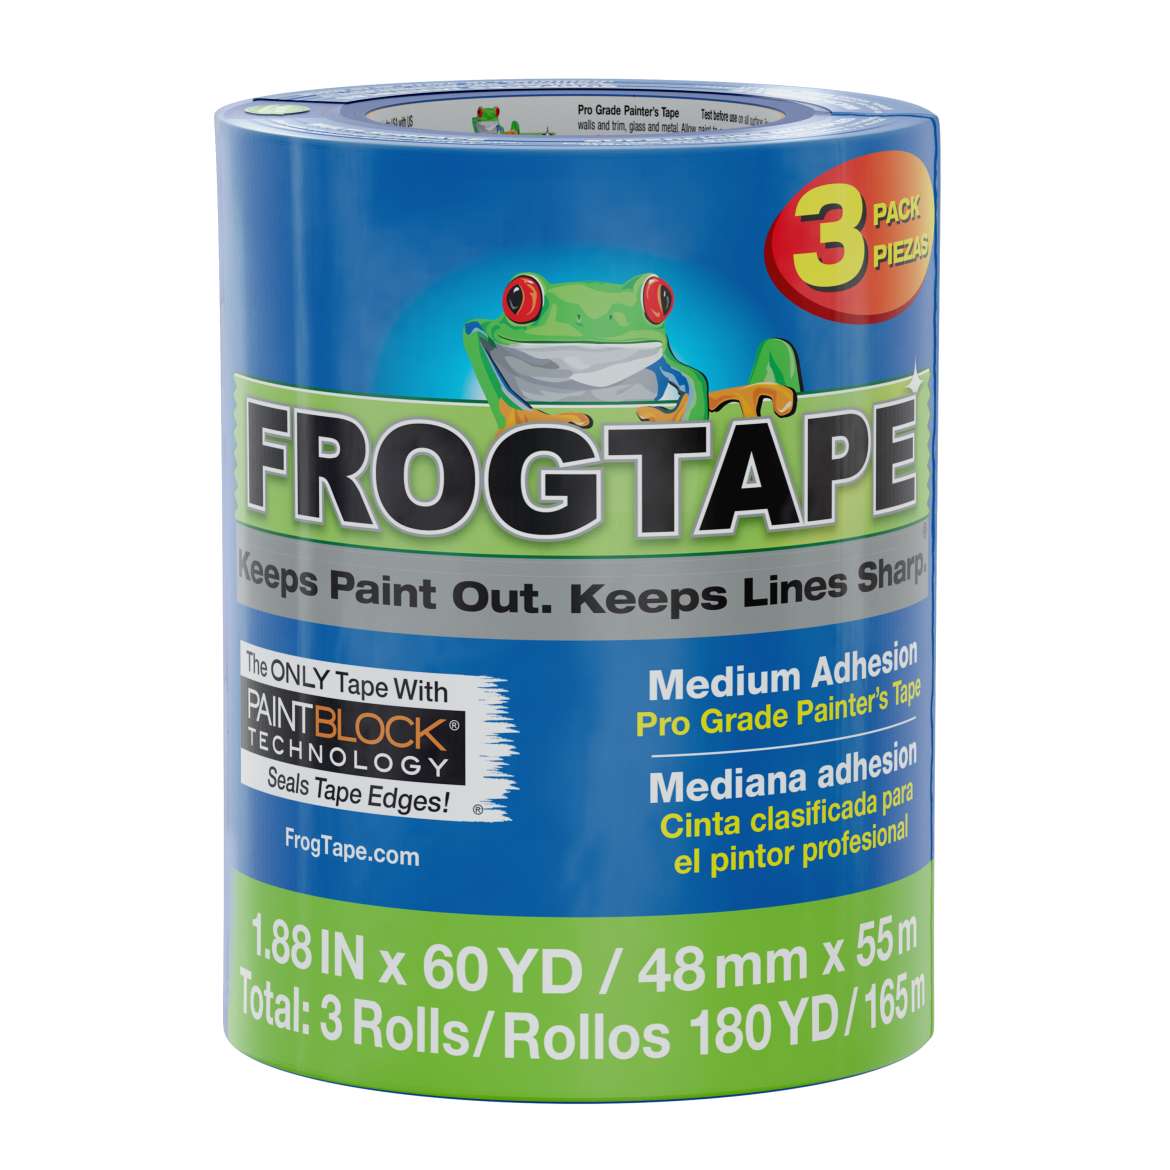 FrogTape® Pro Grade Painter’s Tape – Blue, 3 pk, 1.88 in. x 60 yd.